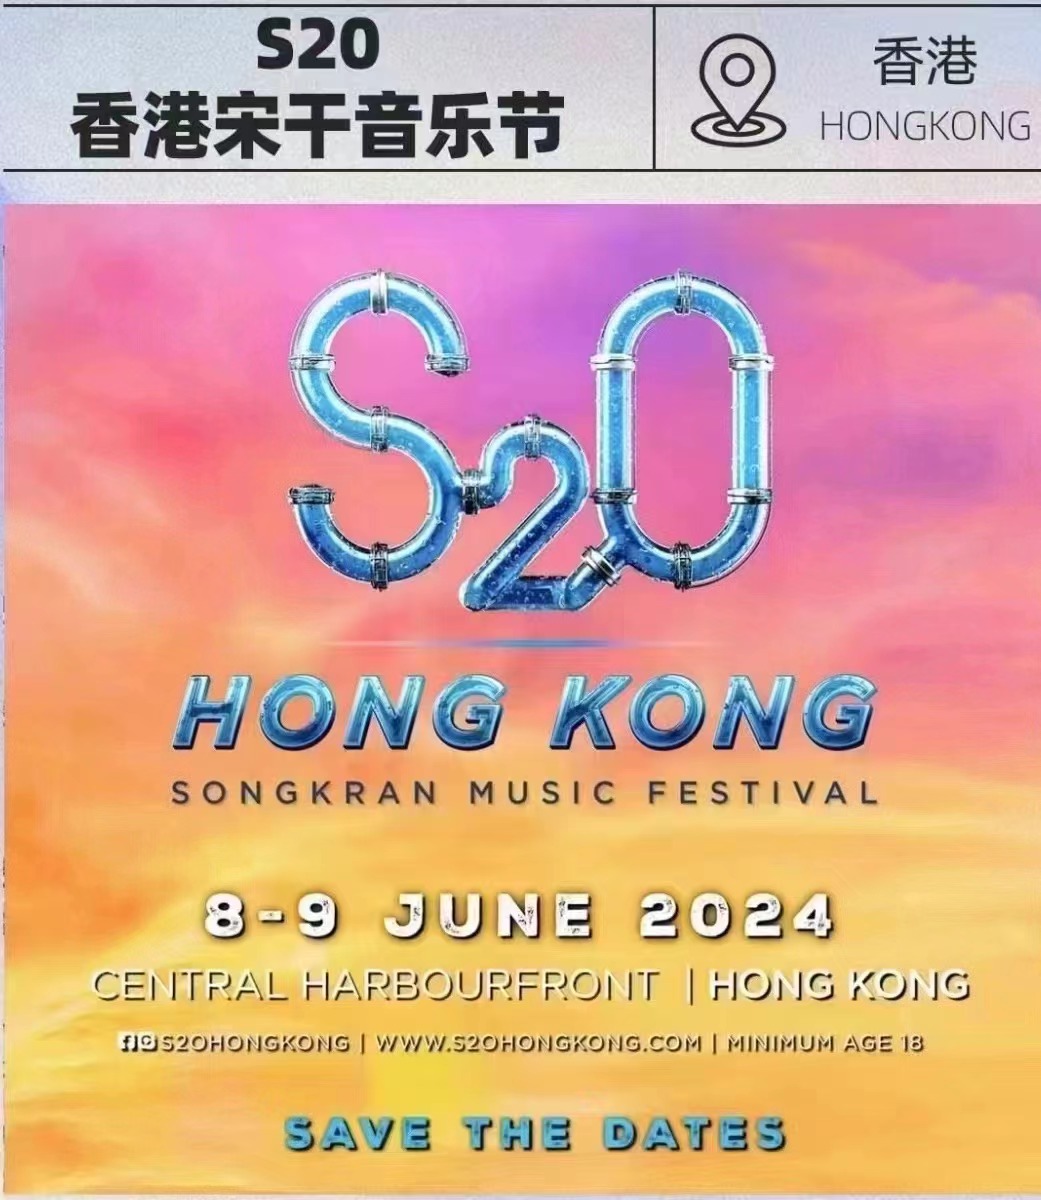 S2O香港宋干音乐节